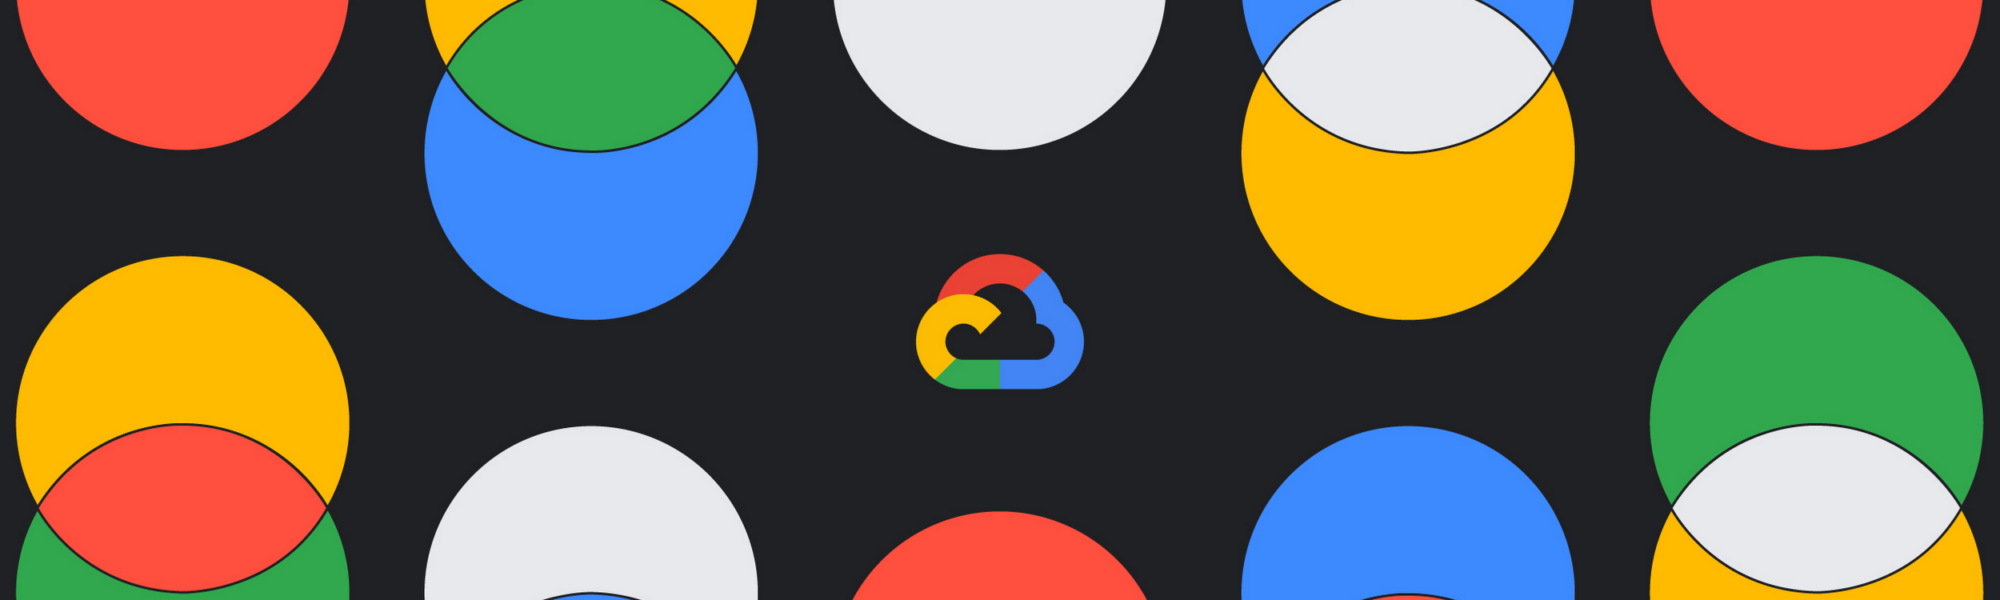 Google Cloud Duet AI